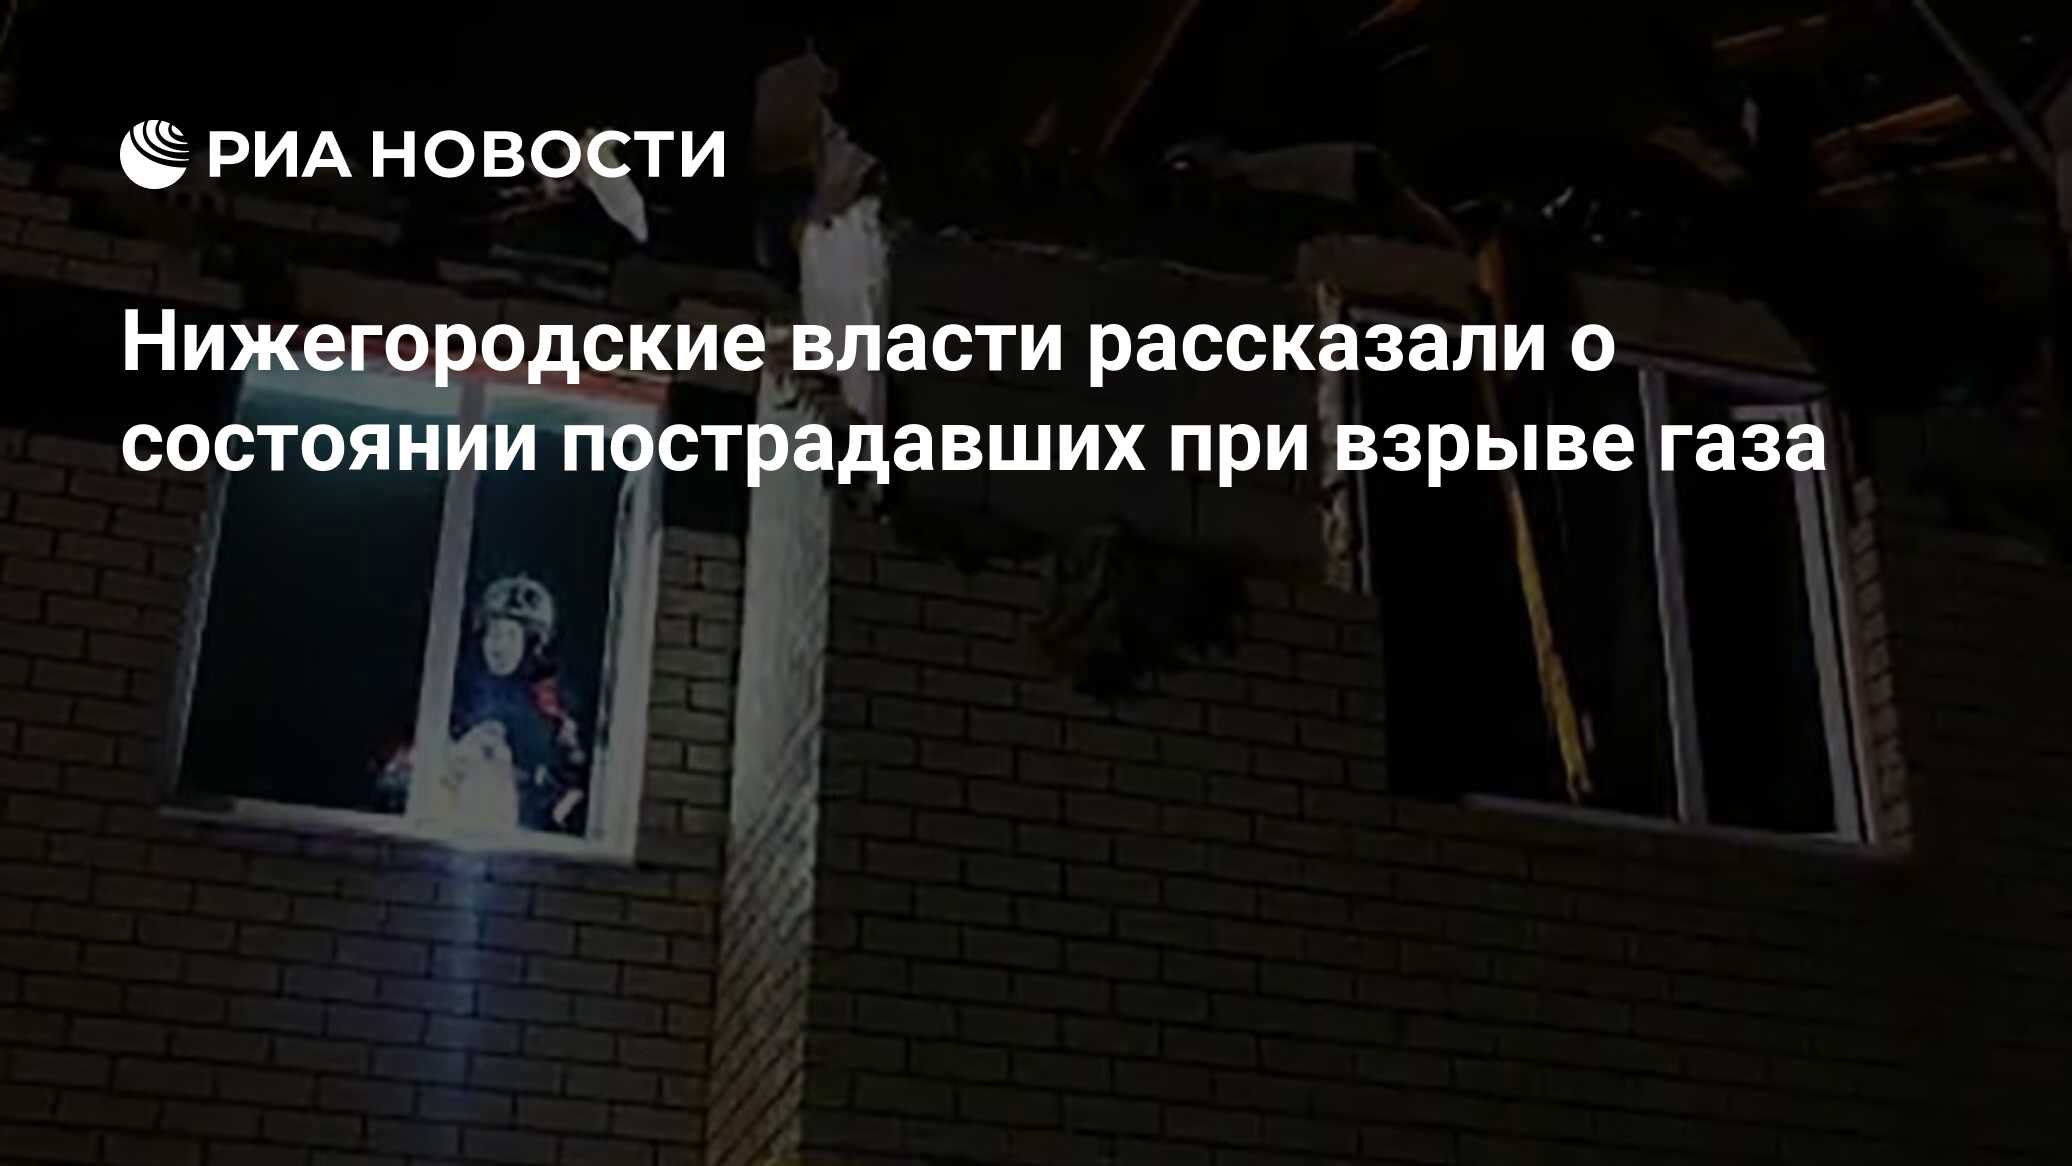 Нижегородские власти рассказали о состоянии пострадавших при взрыве газа